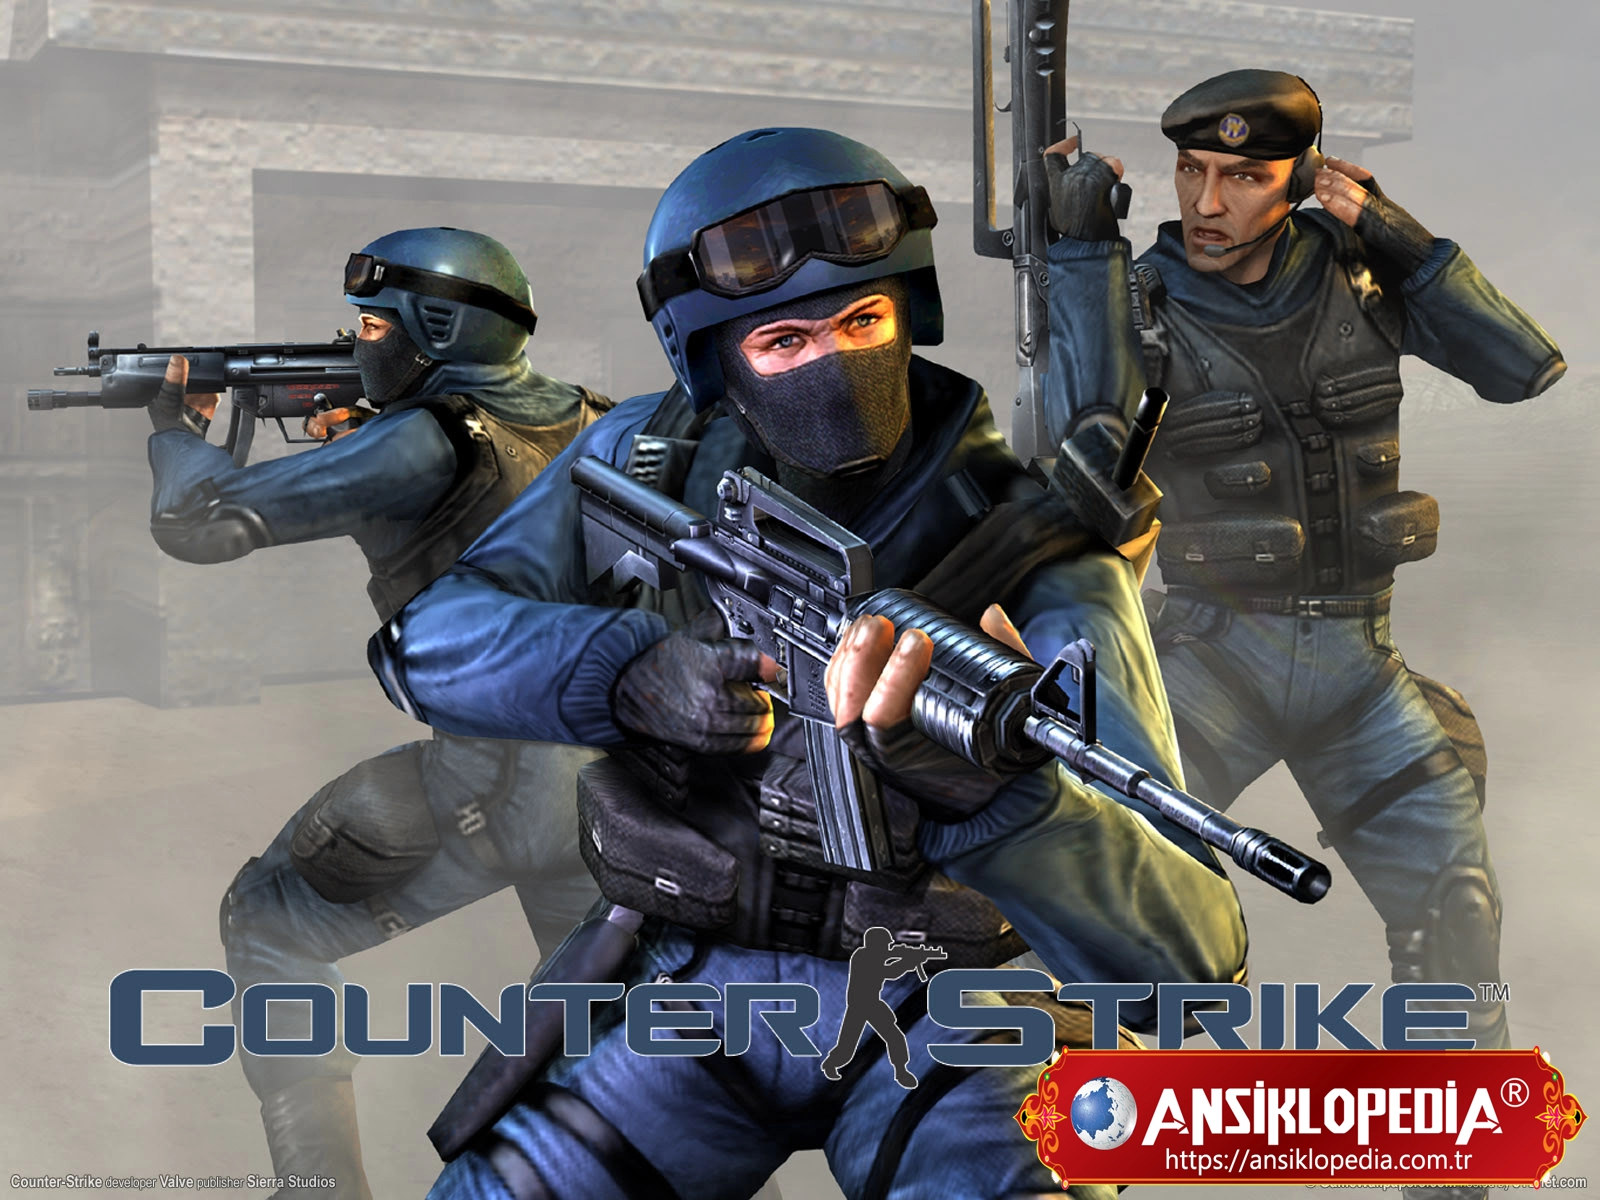 Counter Strike 1.6 Yarım Ekran Sorunu Çözümü - Tam Ekran Oynama